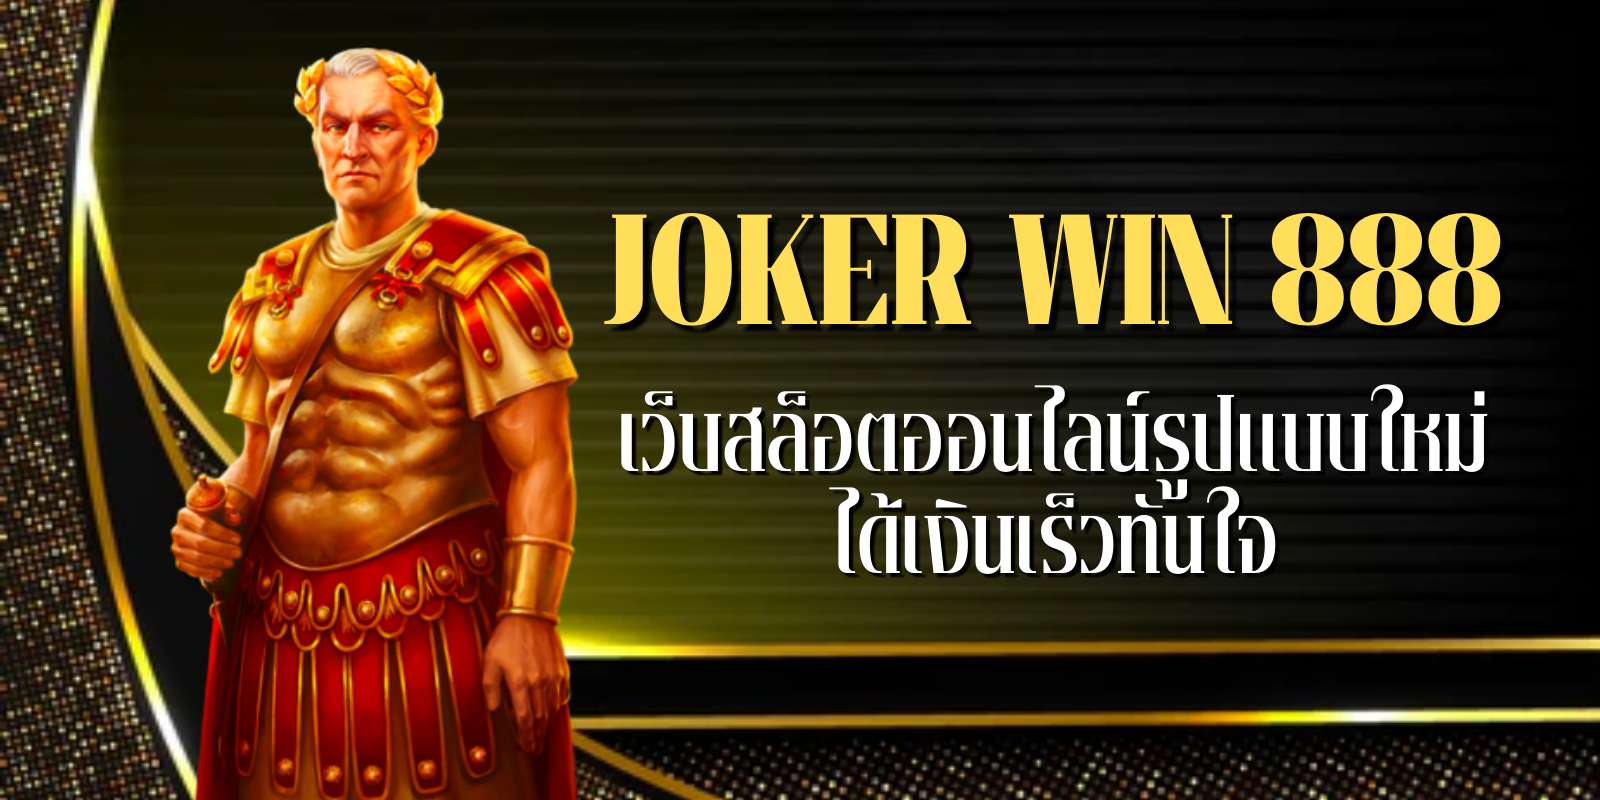 joker win 888 เว็บสล็อตออนไลน์รูปแบบใหม่ ได้เงินเร็วทันใจ